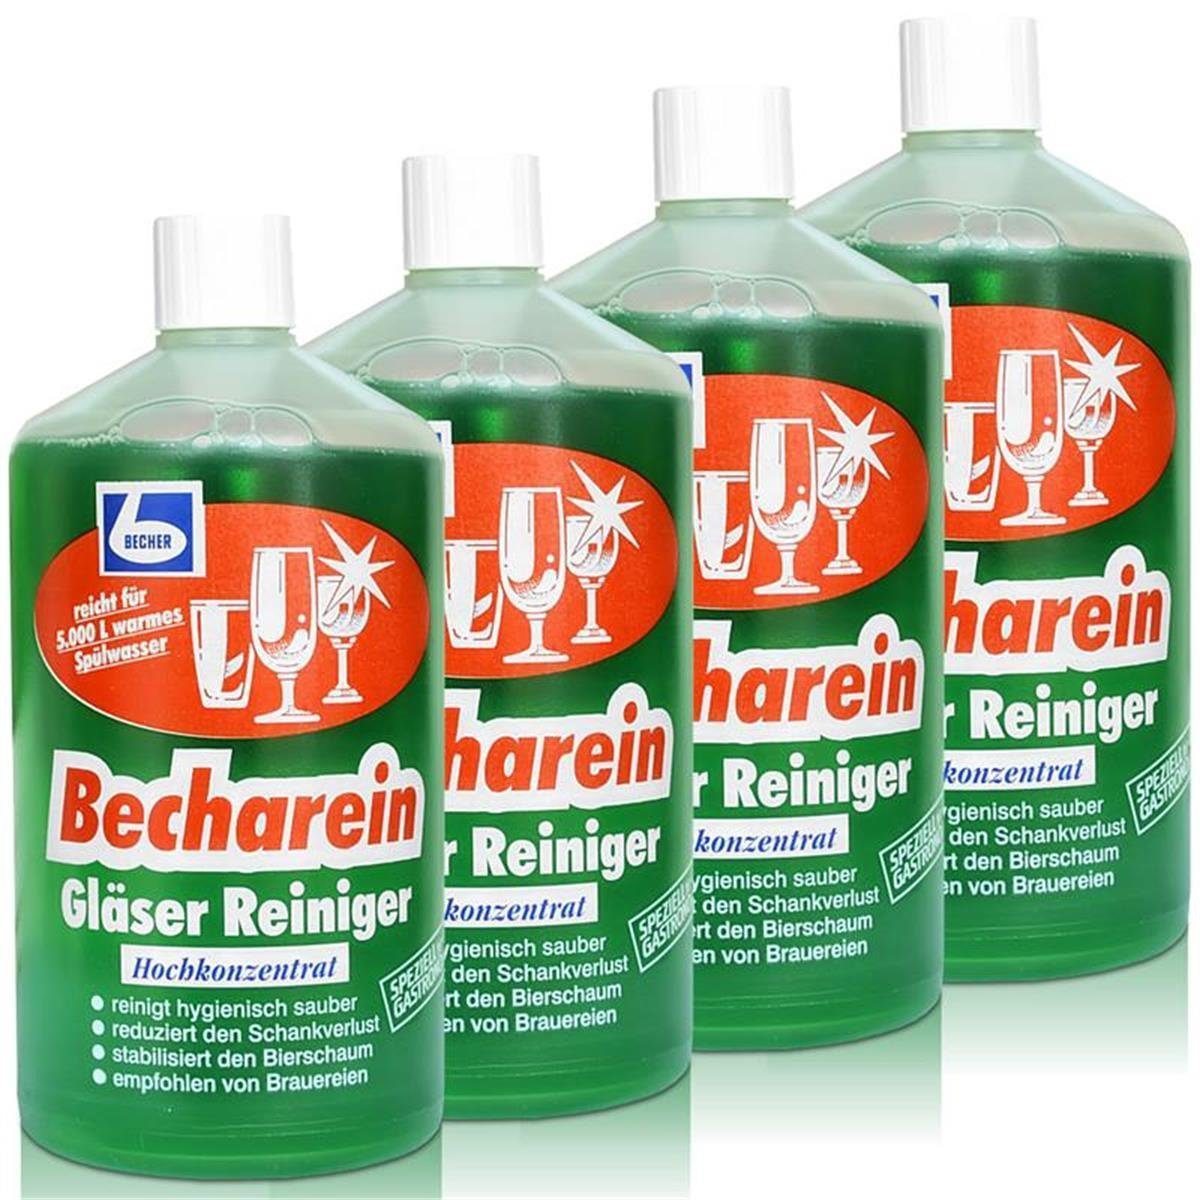 Becharein Hochkonzentrat Glasreiniger Becher 4x Reiniger Liter Dr. Dr. 1 / Becher Gläser